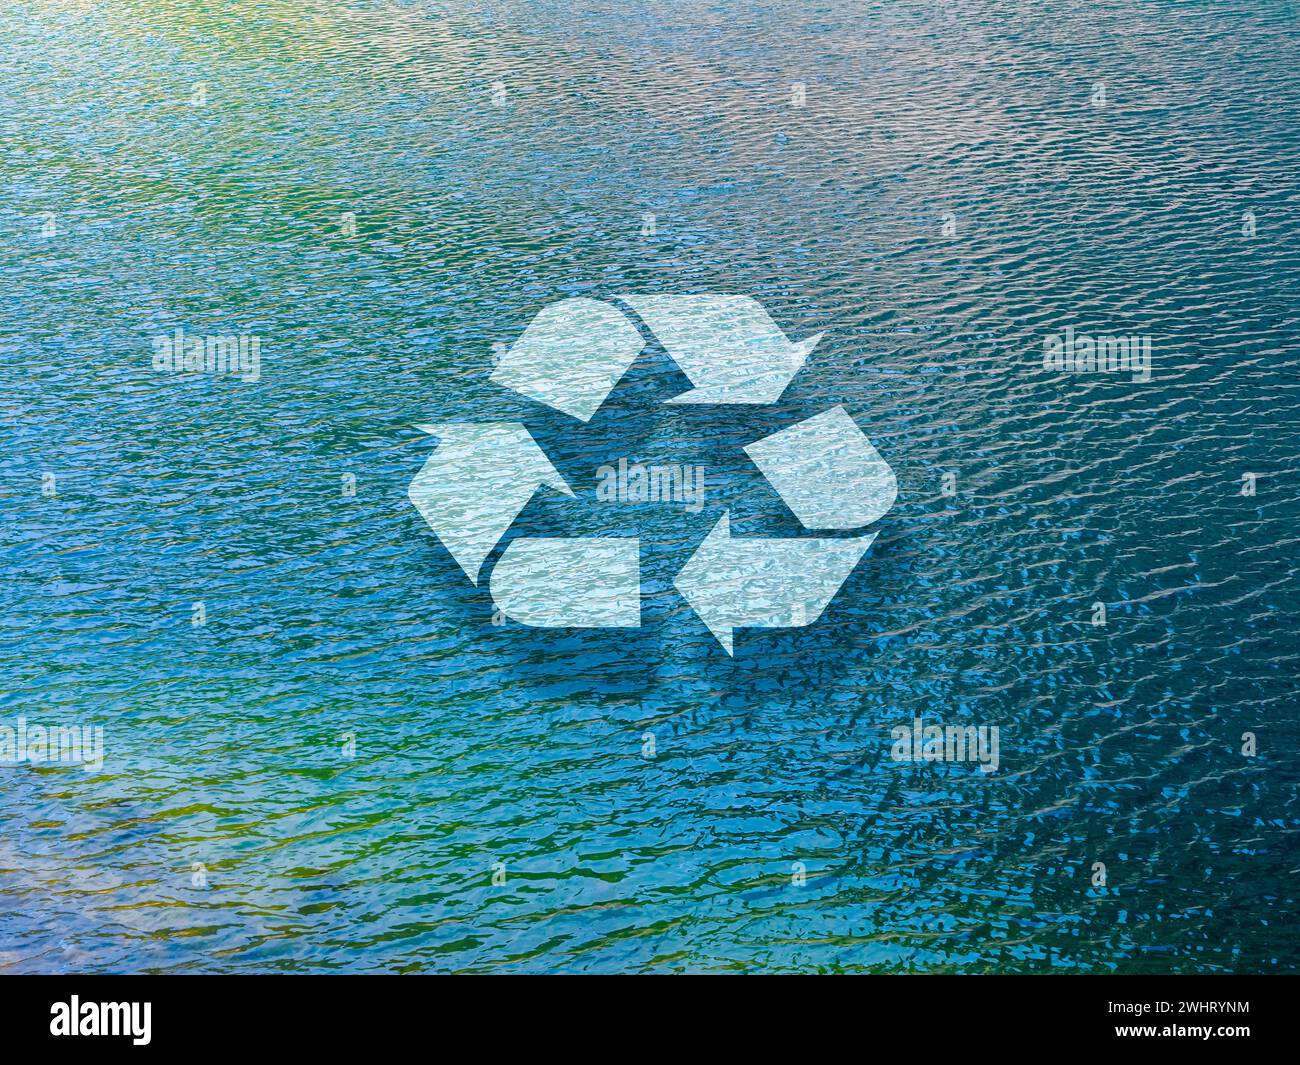 Recycling-Symbol-Schild schwimmt auf der natürlichen blauen Wasseroberfläche, See Hintergrund. Recycling von Wasser, Schonung von Umweltressourcen, Umweltschutz Stockfoto